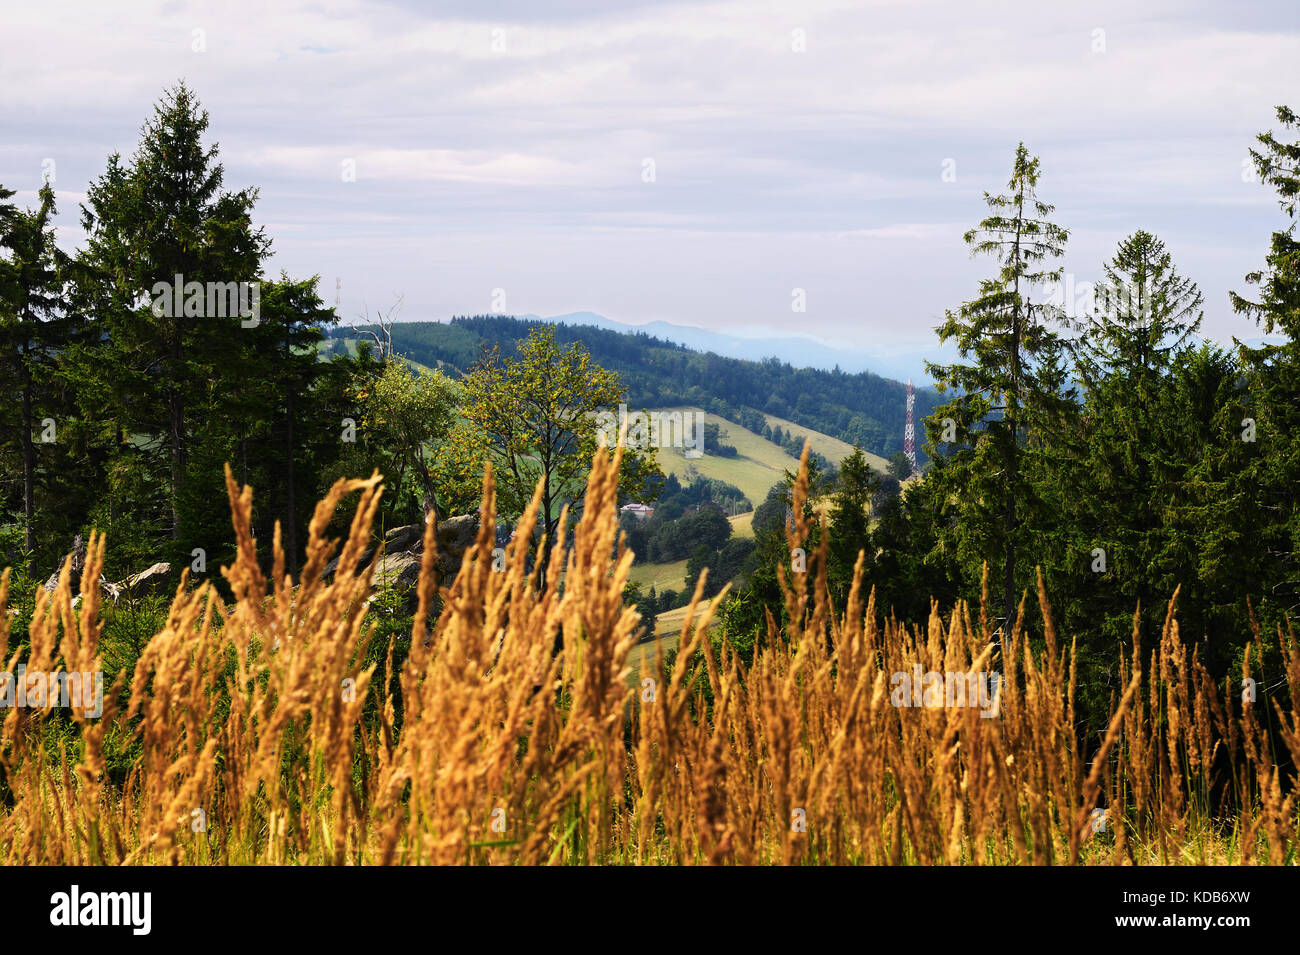 Vaste panorama vue depuis la colline boisée dans le parc paysage montagnes owl, sudetes, campagne au sud-ouest de la Pologne. Banque D'Images